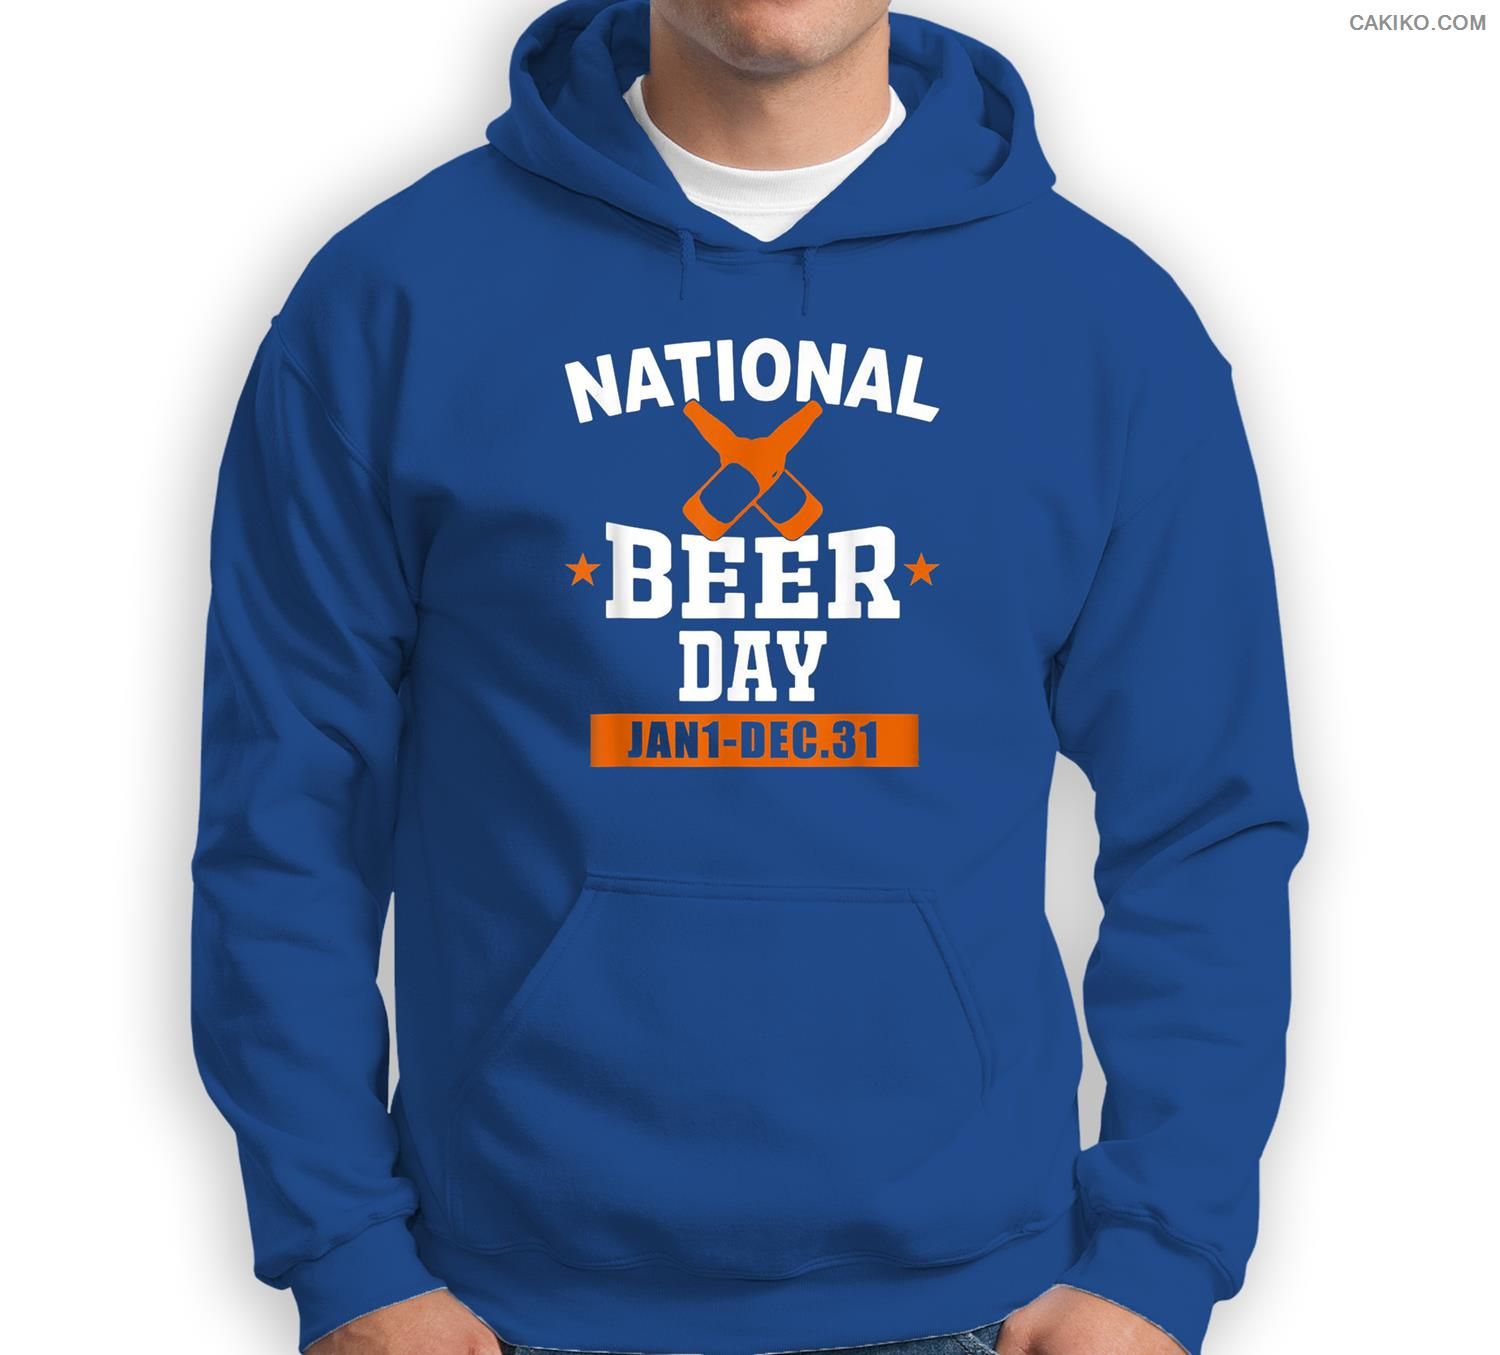 National Beer Day Jan 1 Dec 31 Sweatshirt & Hoodie